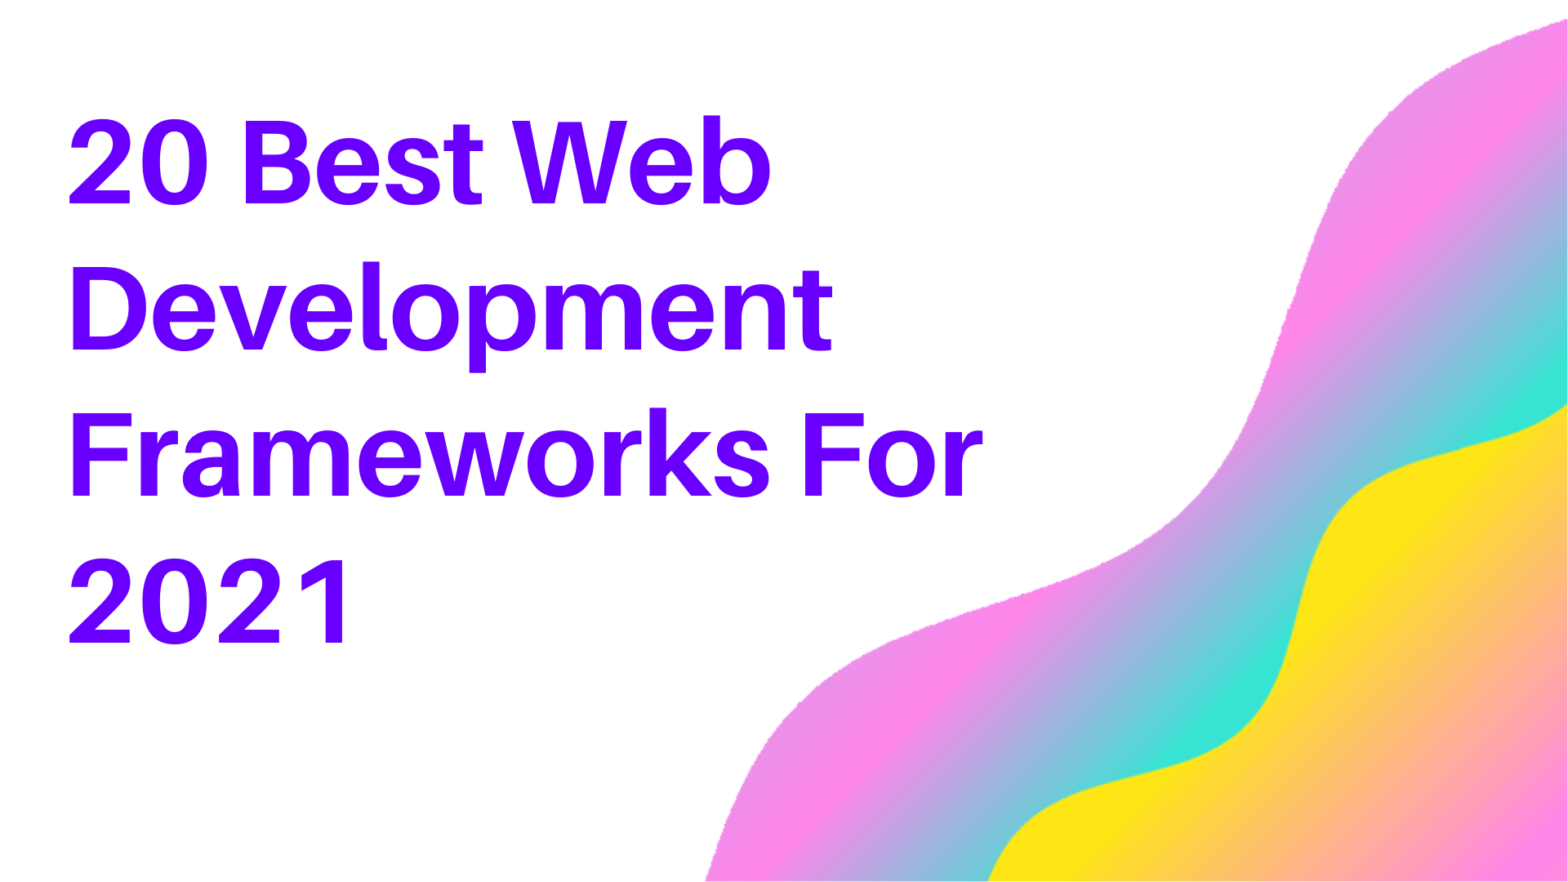 20 Best Web Development Frameworks For 2021